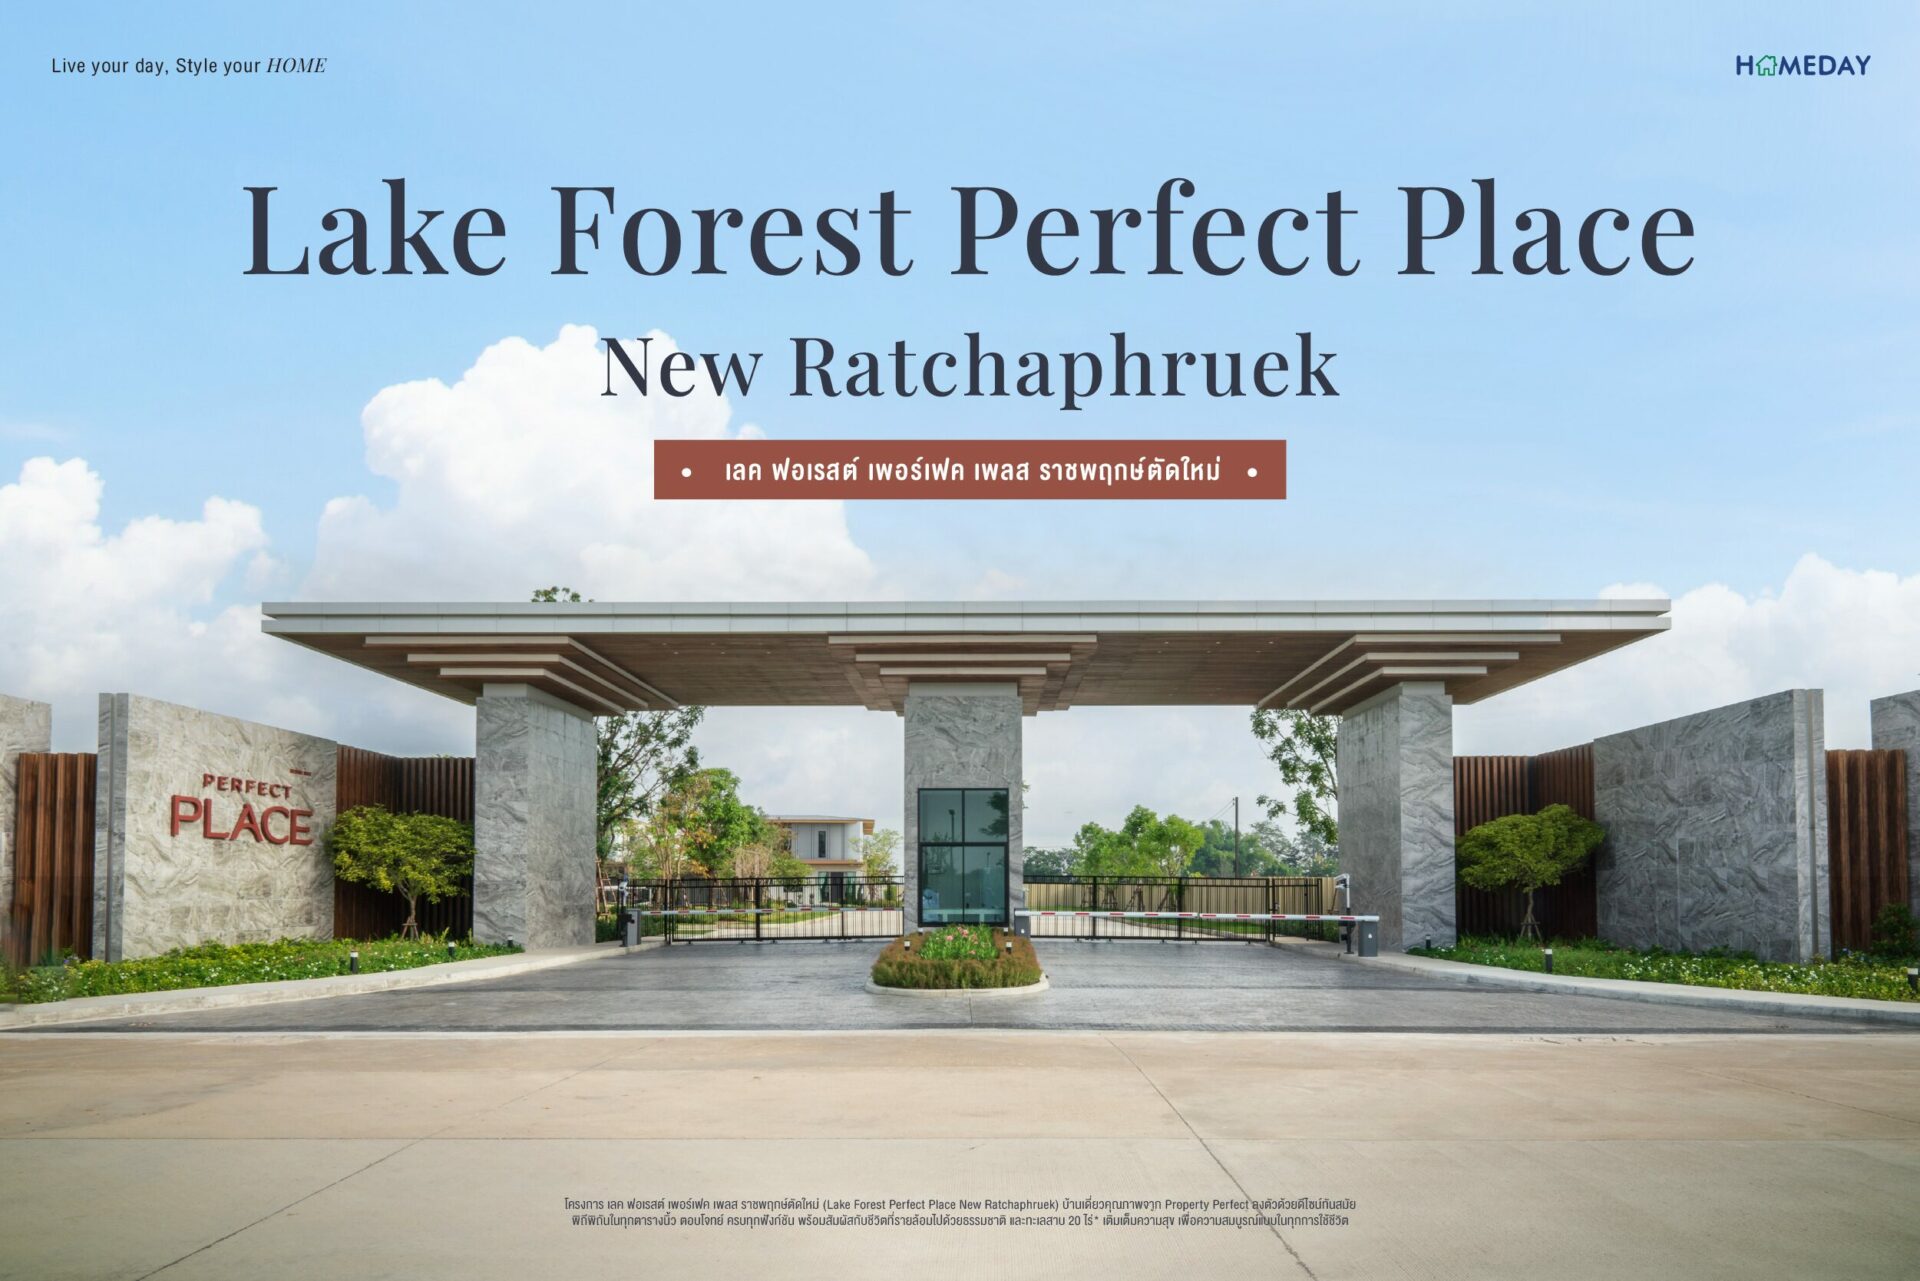 รีวิว เลค ฟอเรสต์ เพอร์เฟค เพลส ราชพฤกษ์ตัดใหม่ (Lake Forest Perfect Place New Ratchaphruek) C1